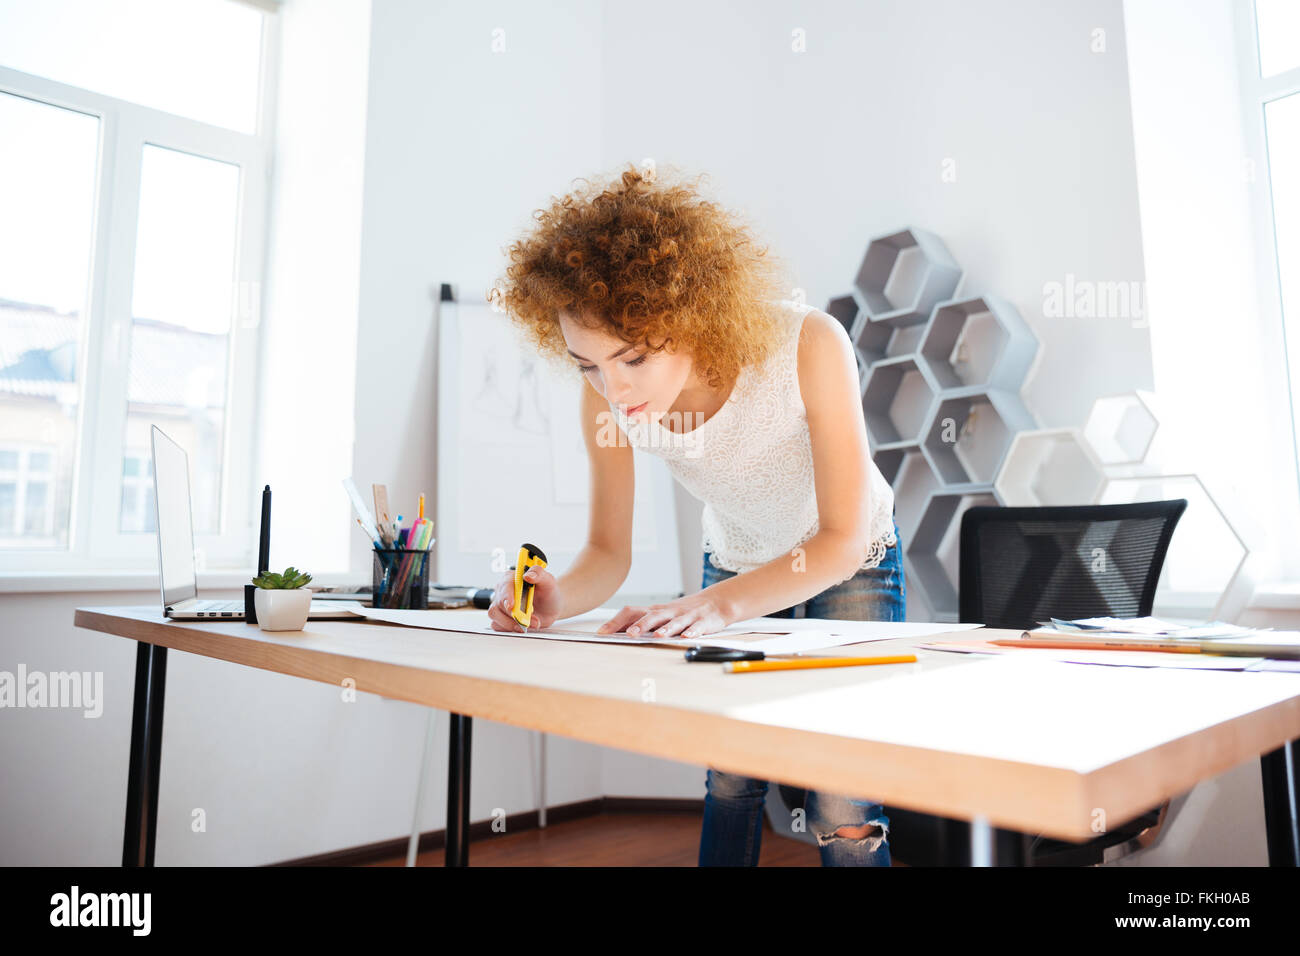 Fotograf Ernst attraktive junge Frau mit lockigen roten Haaren arbeitet im Büro mit Briefpapier Messer Stockfoto